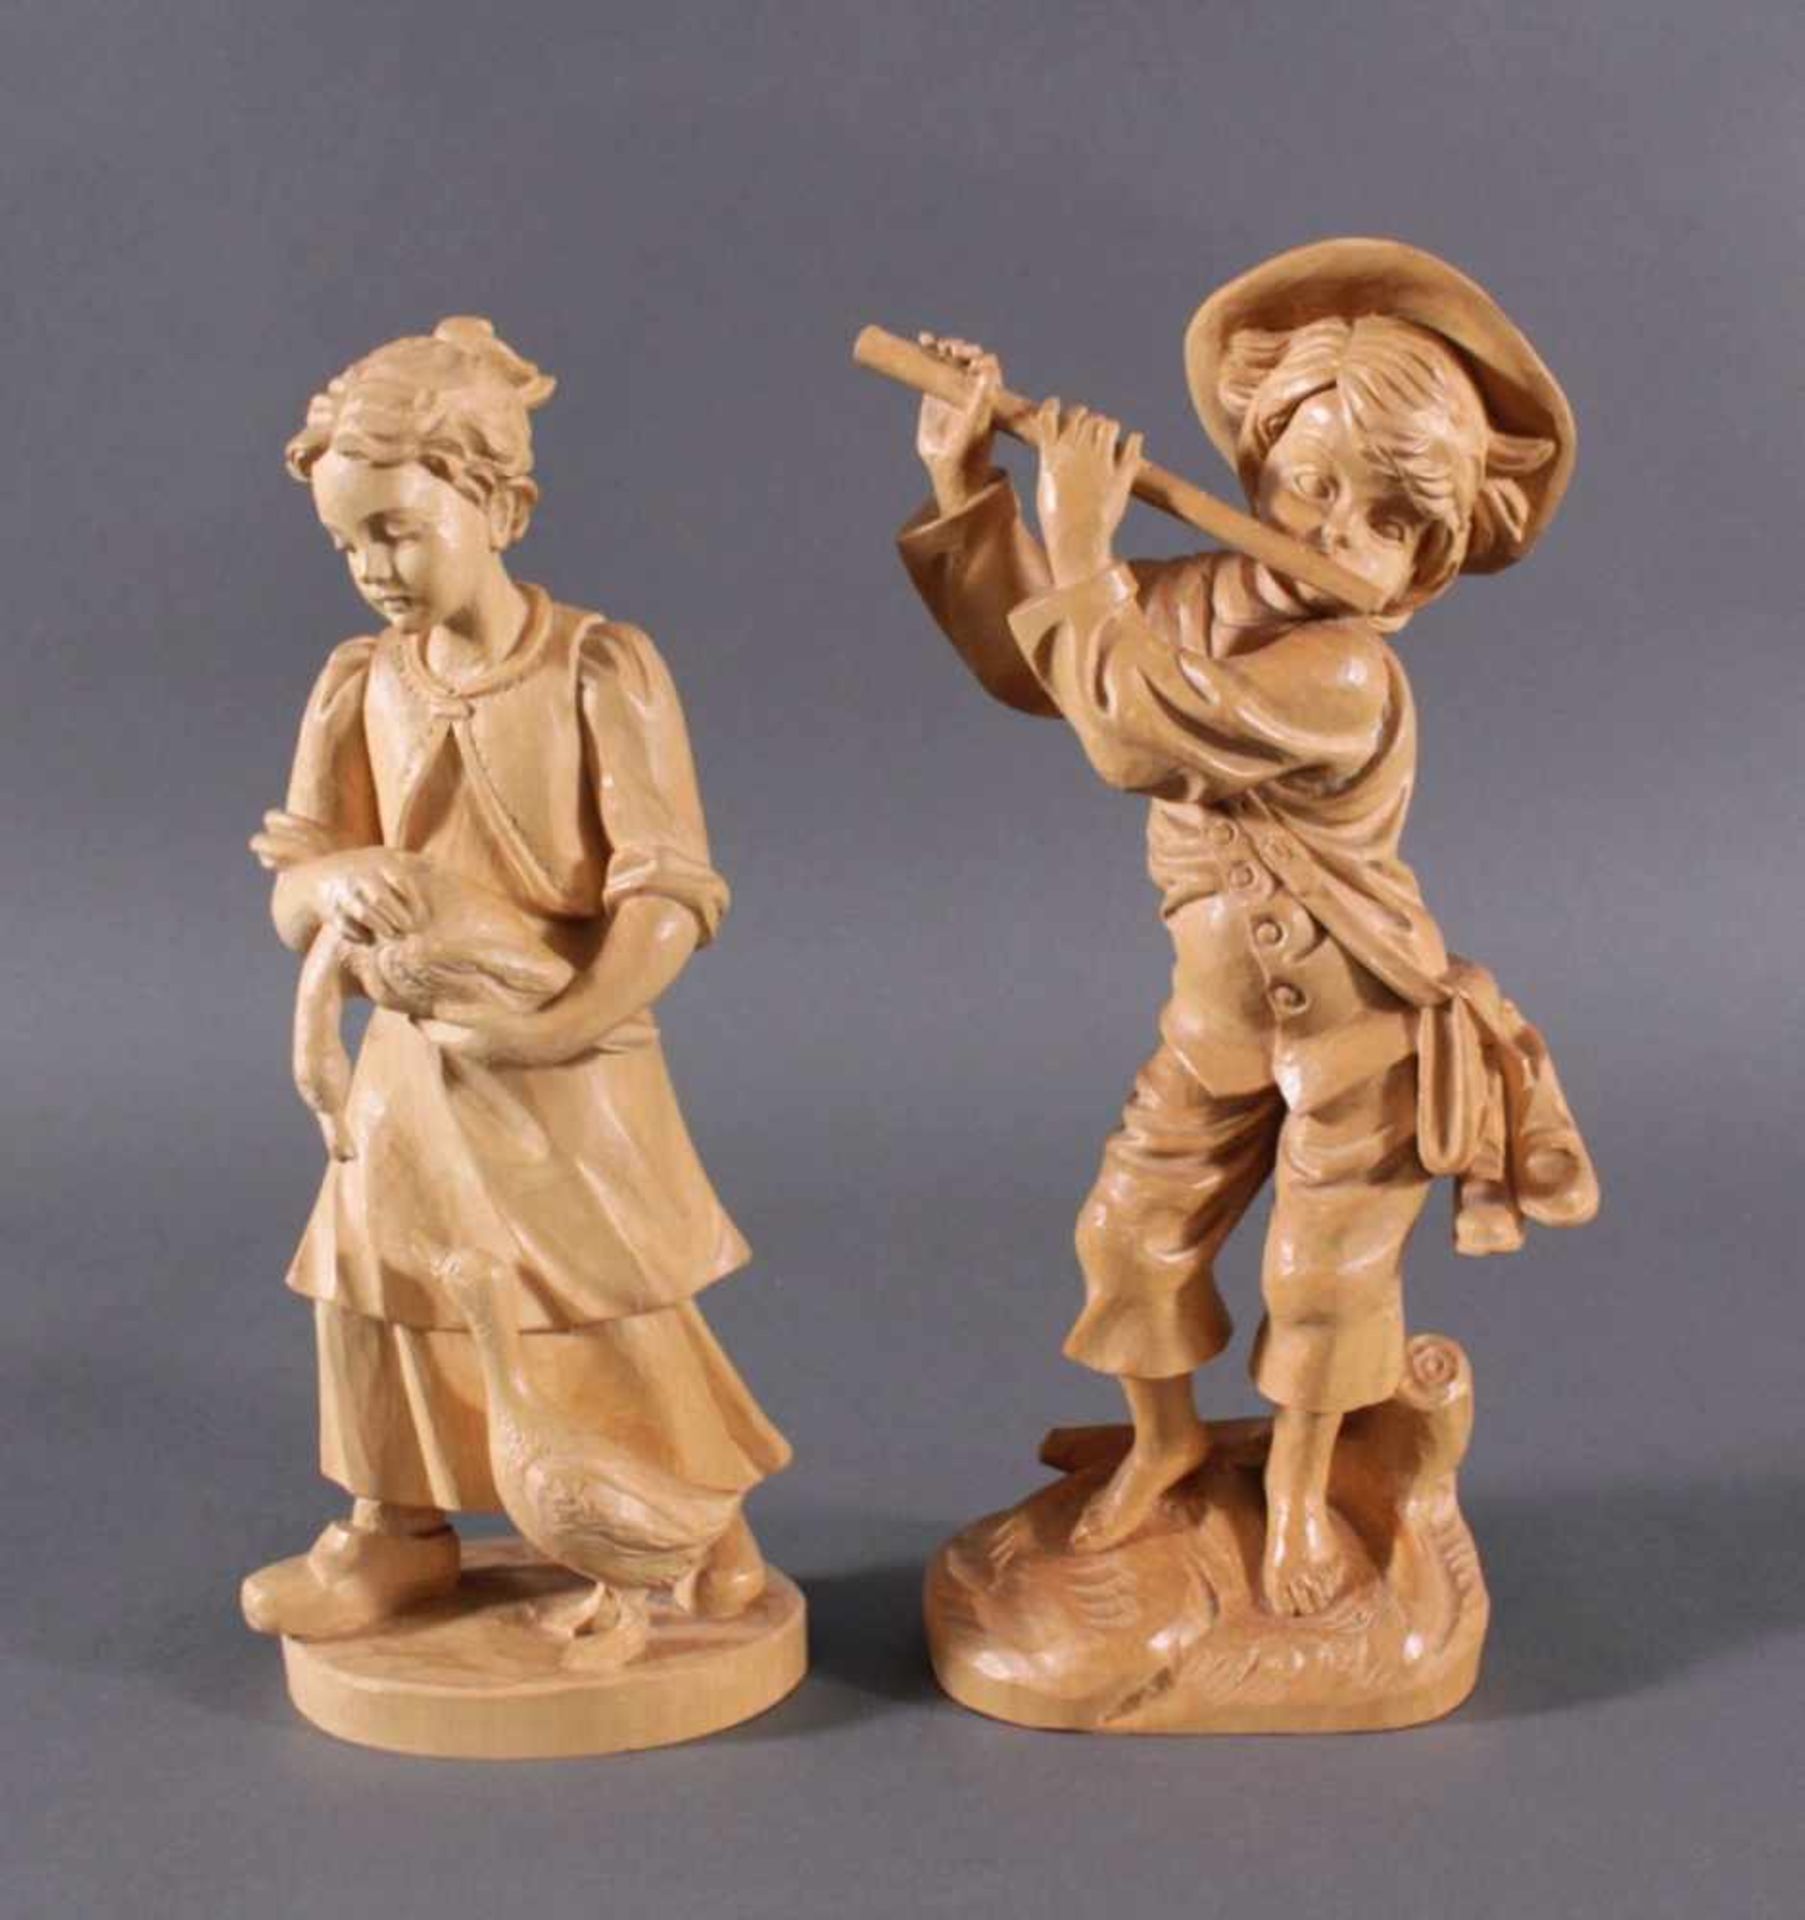 2 Holz-Skulpturen, Flötenspieler und GänselieselAus Lindenholz plastisch geschnitzt, Flöte mittig